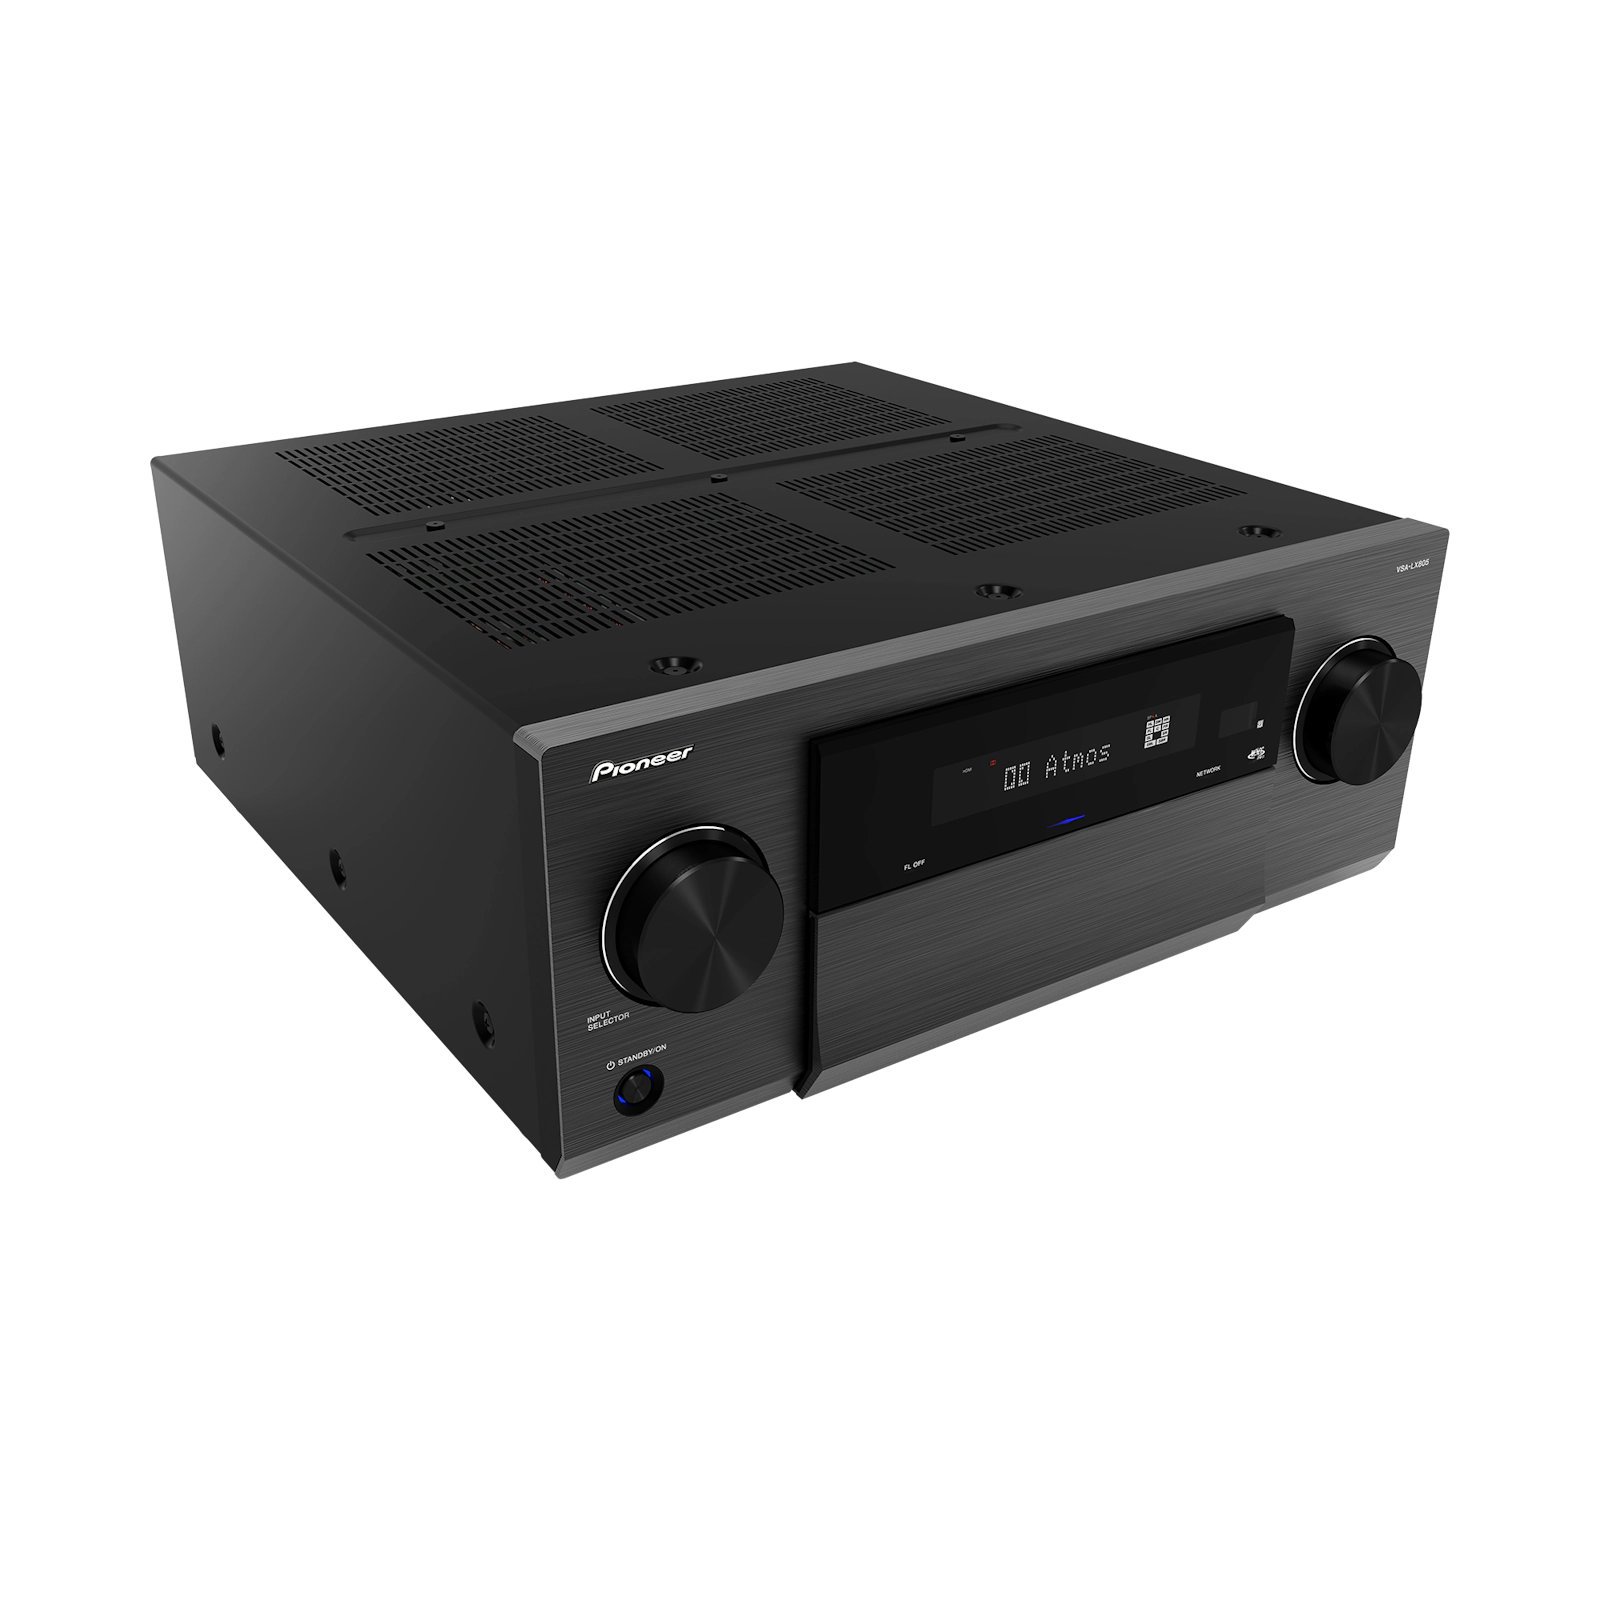 Pioneer VSA-LX805 11.4 AV amplifier